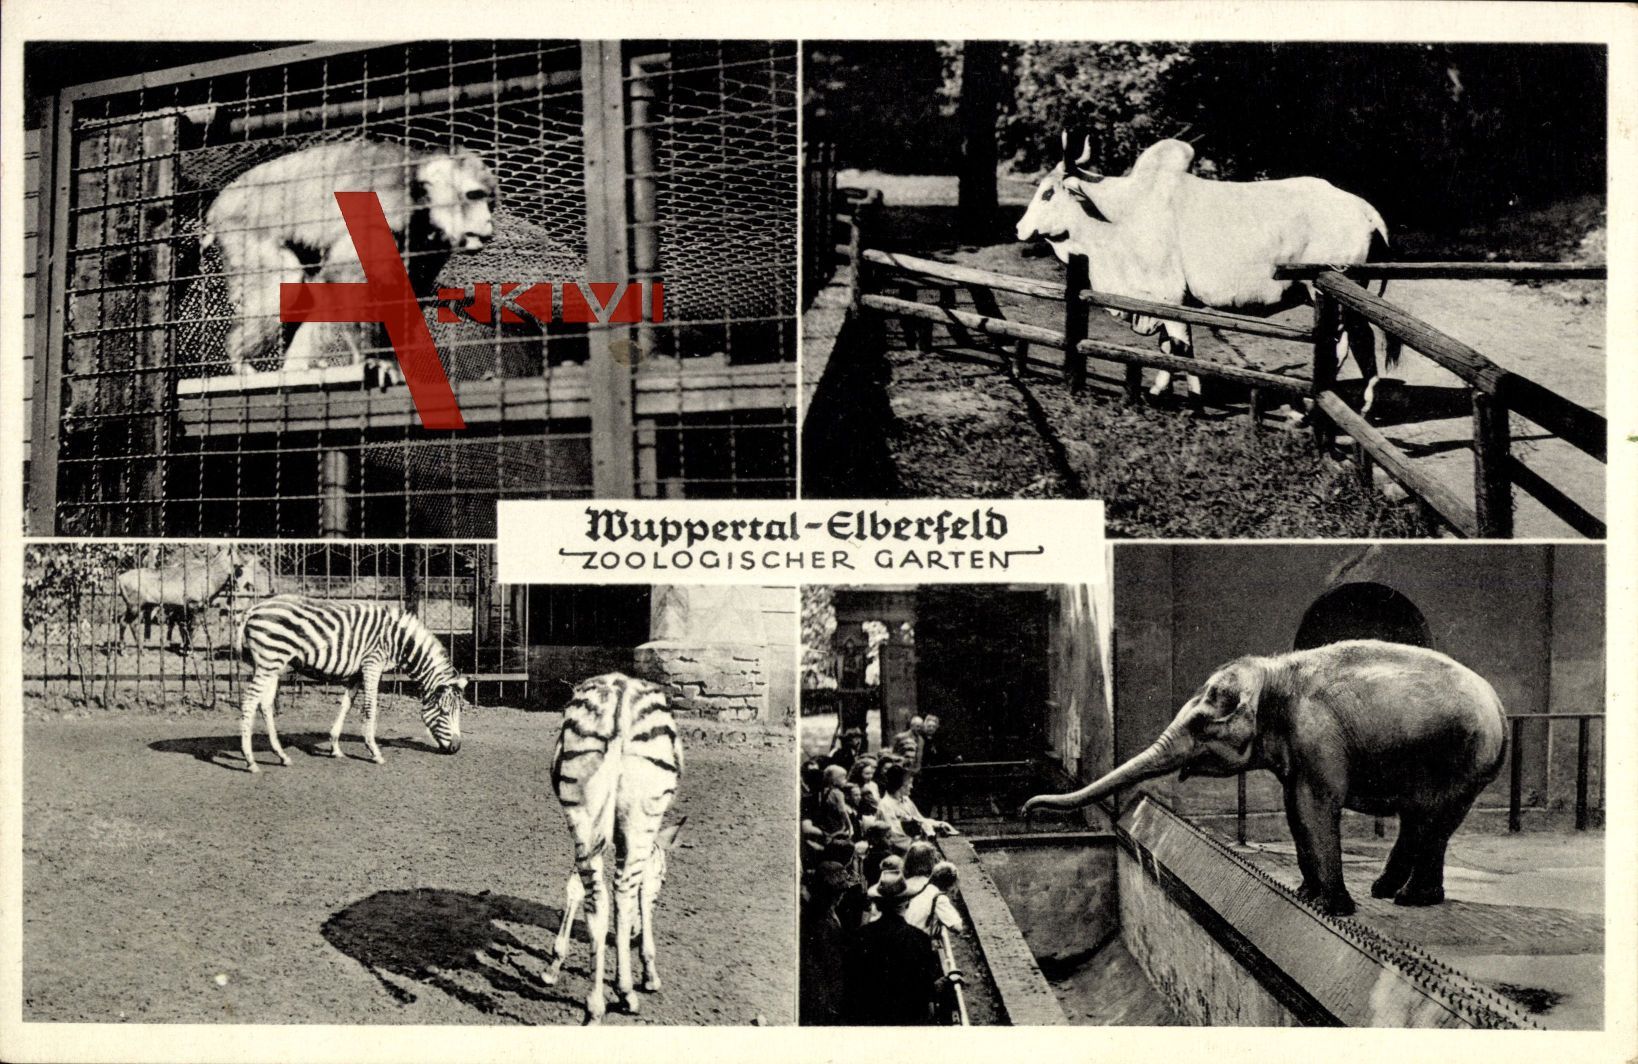 Wuppertal Elberfeld, Zoologischer Garten, Affe, Wasserbüffel, Zebra, Elefant